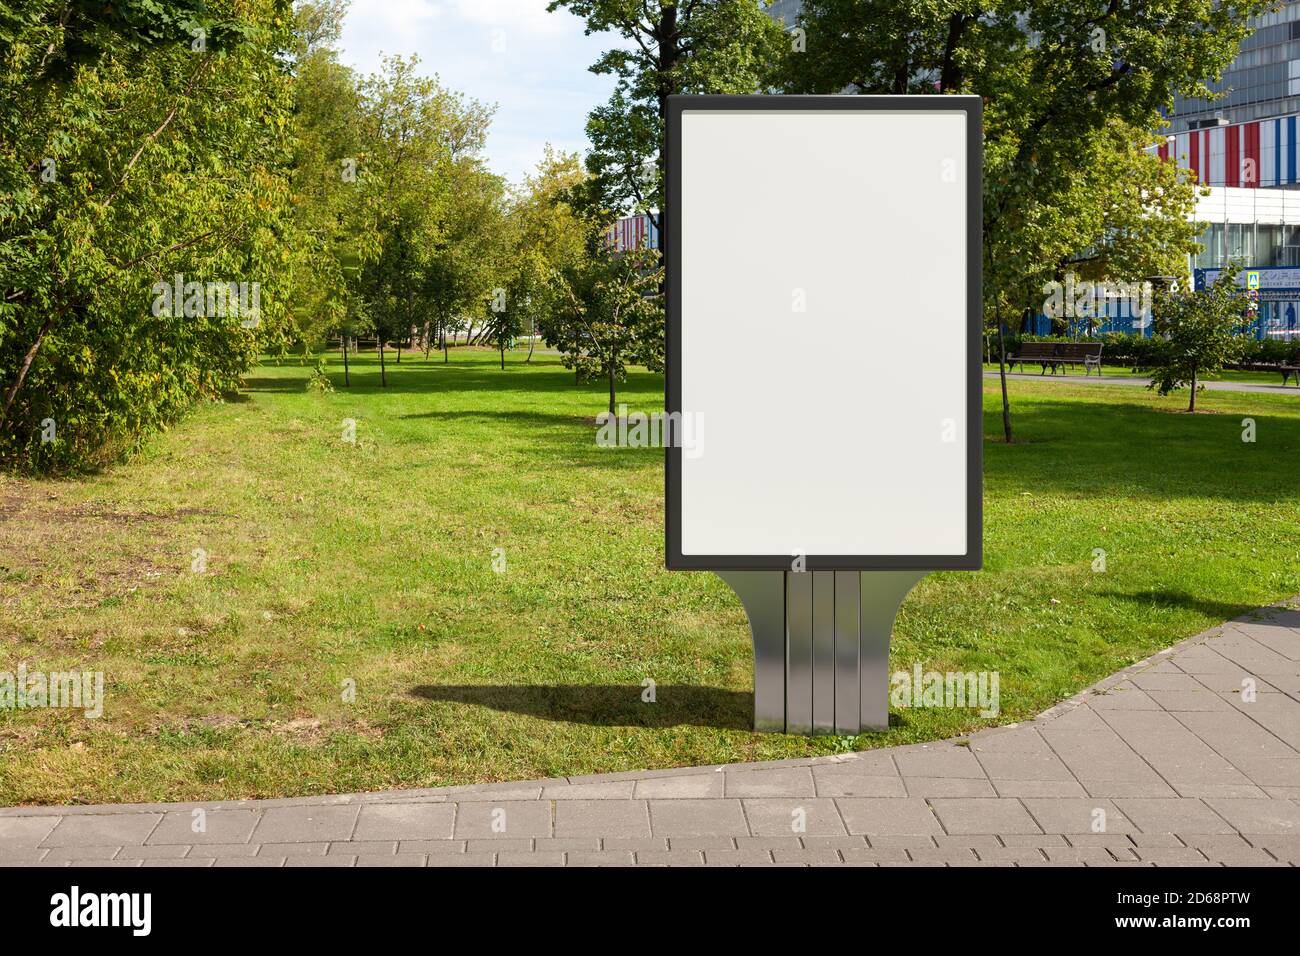 Werbetafelstand im öffentlichen Stadtpark Stockfoto